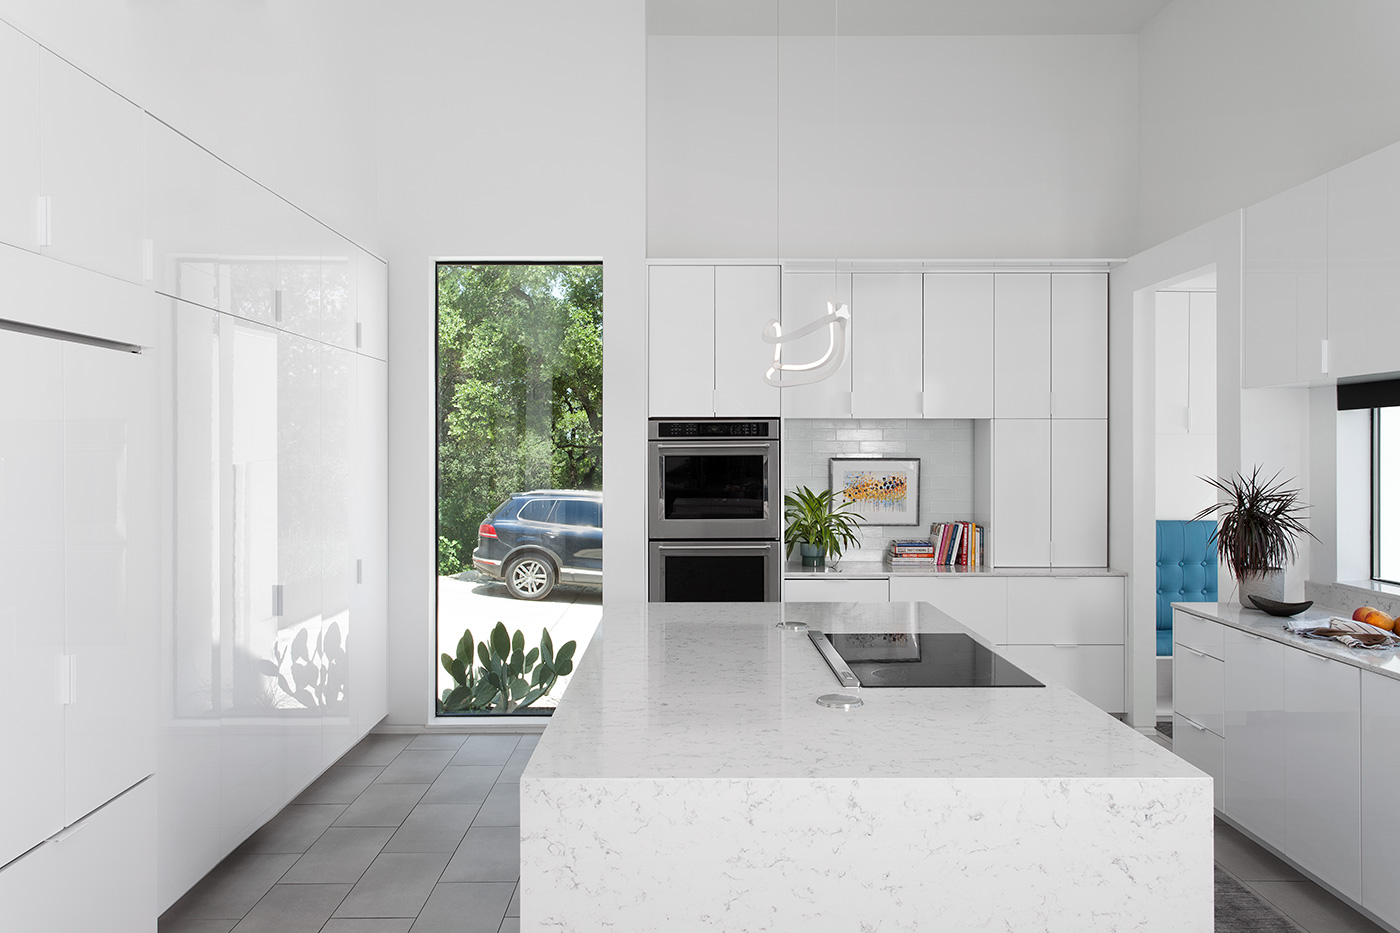 White kitchen with new sleek appliances.